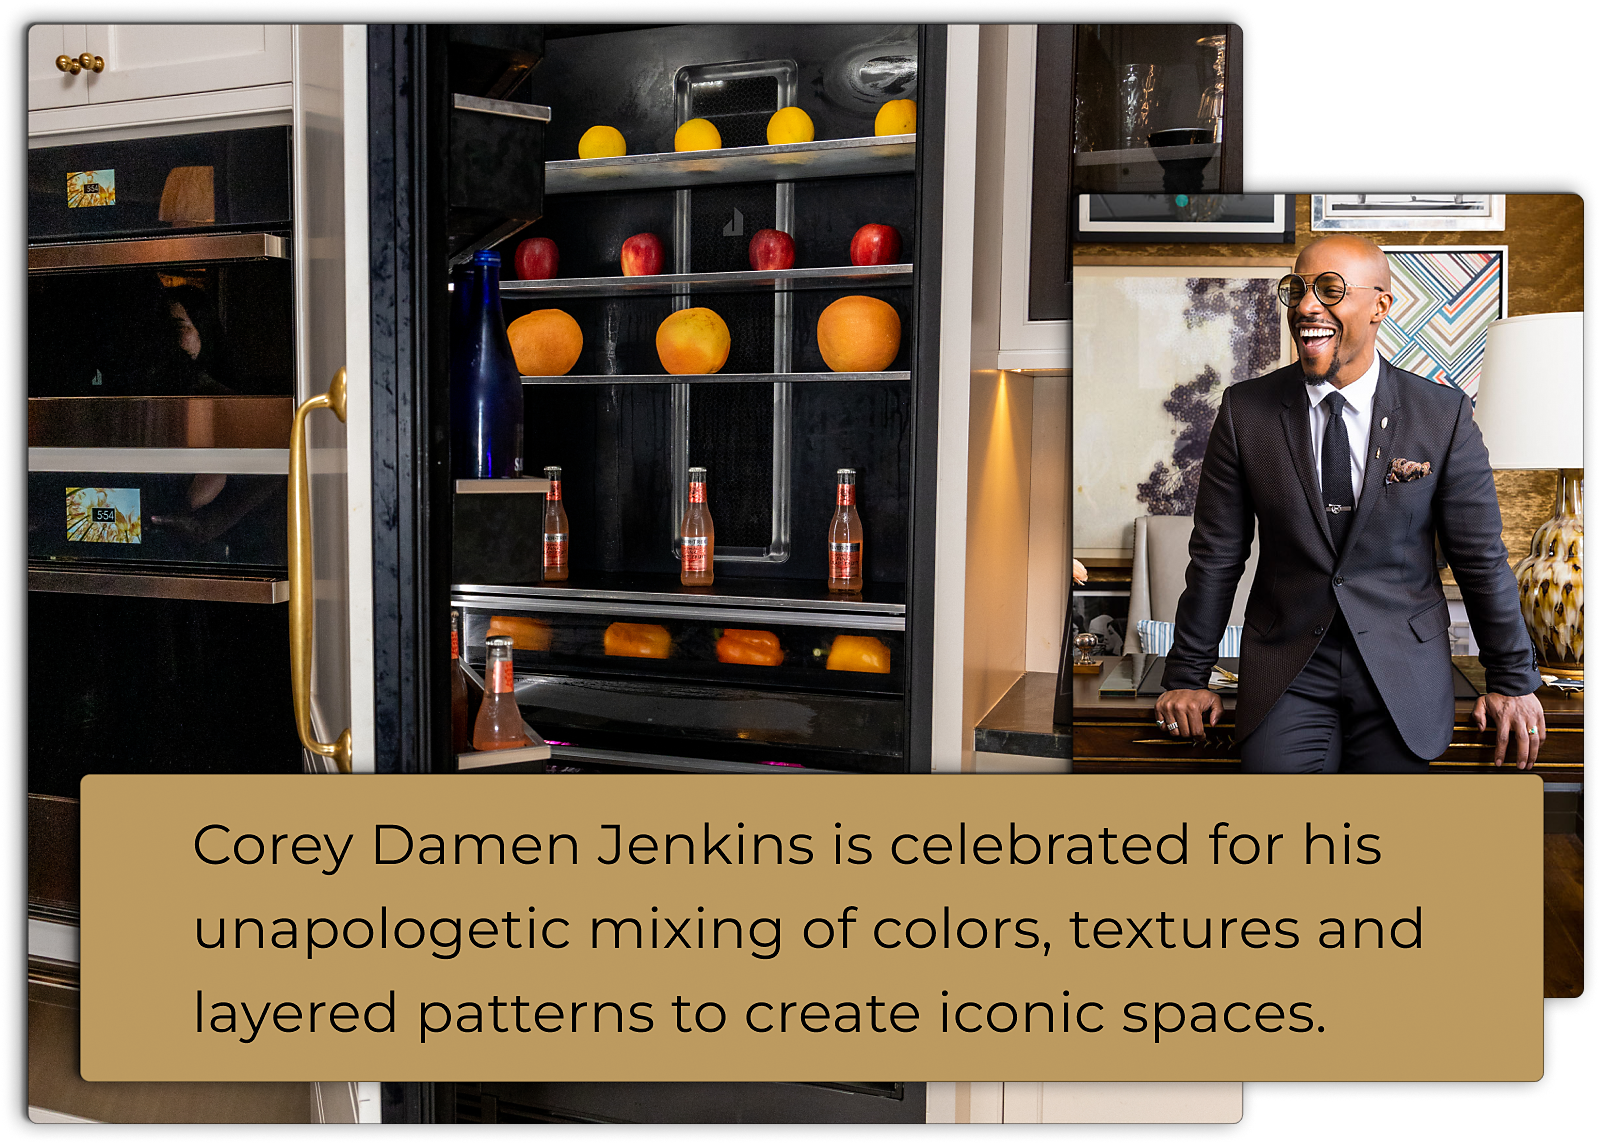 An open JennAir® Column and Portrait of Corey Damen Jenkins.